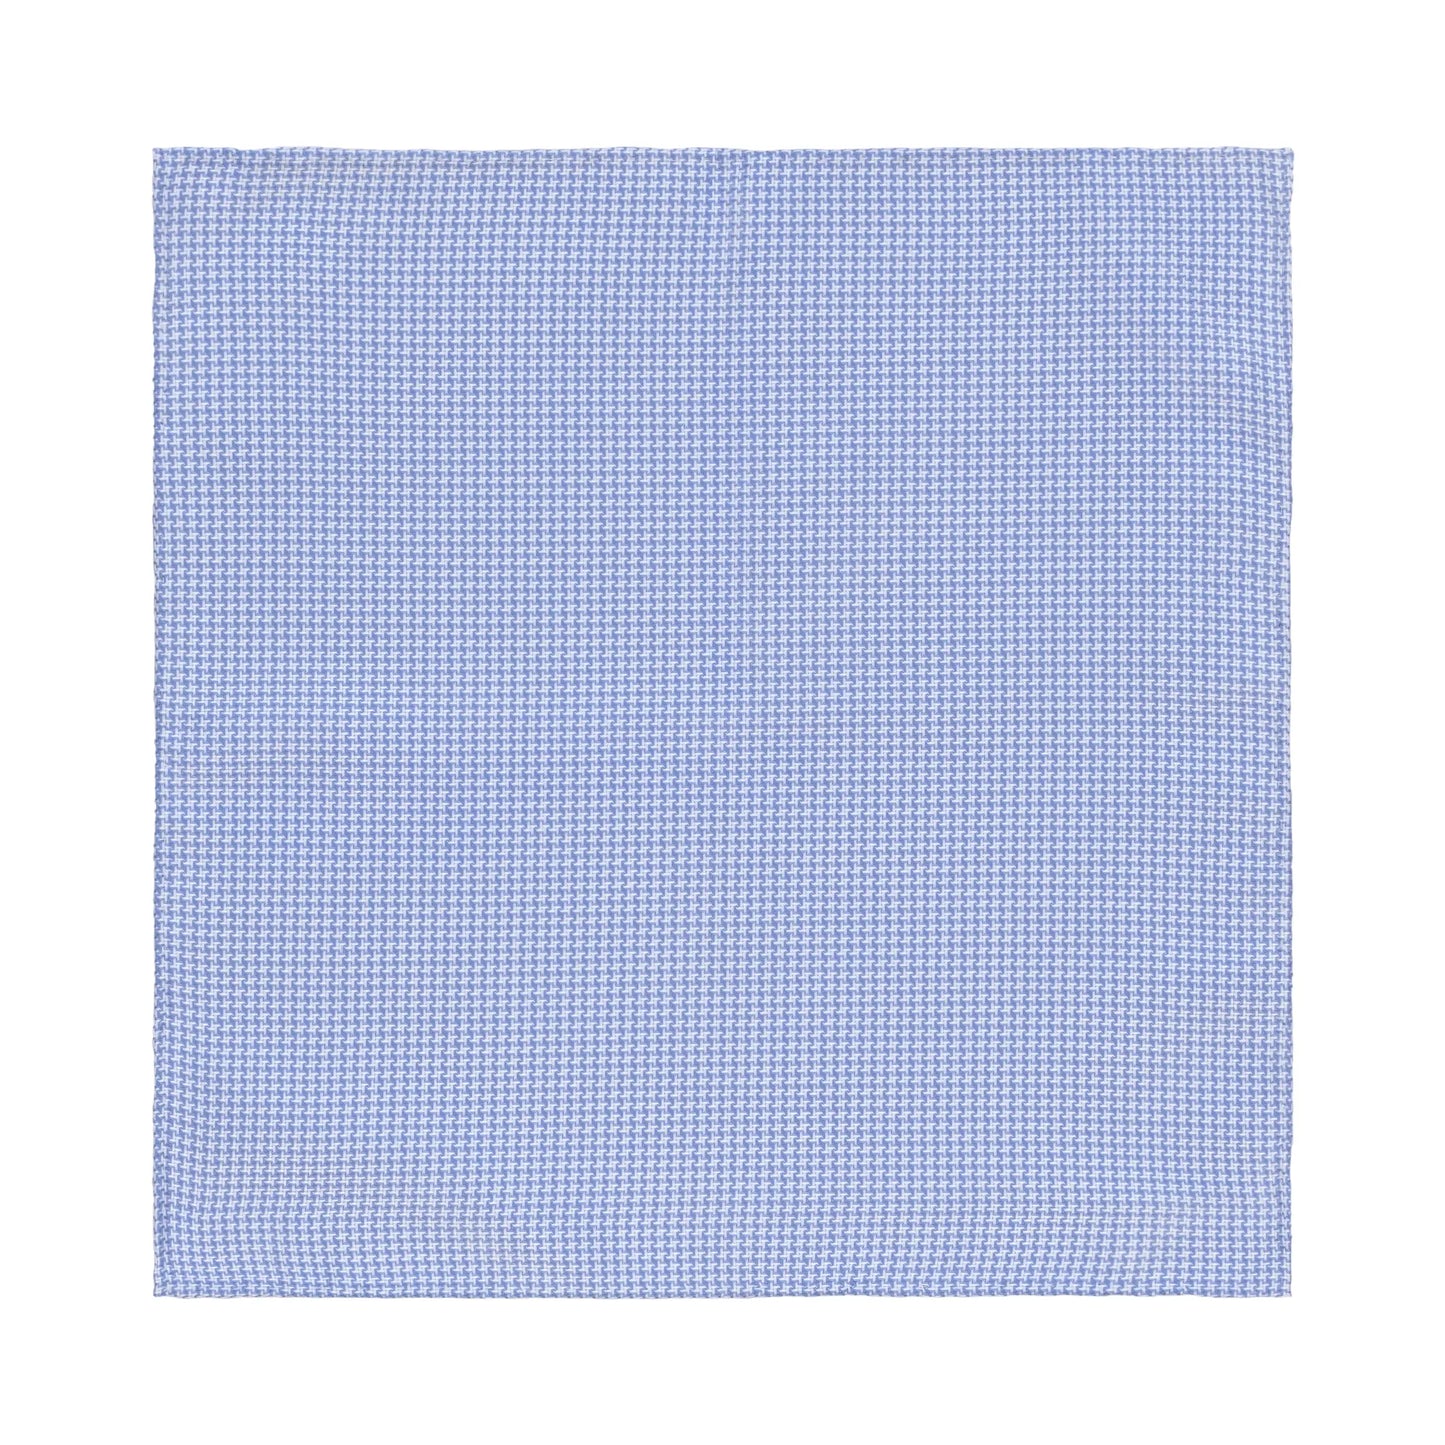 Einstecktuch aus Baumwolle in Blau und Weiß 